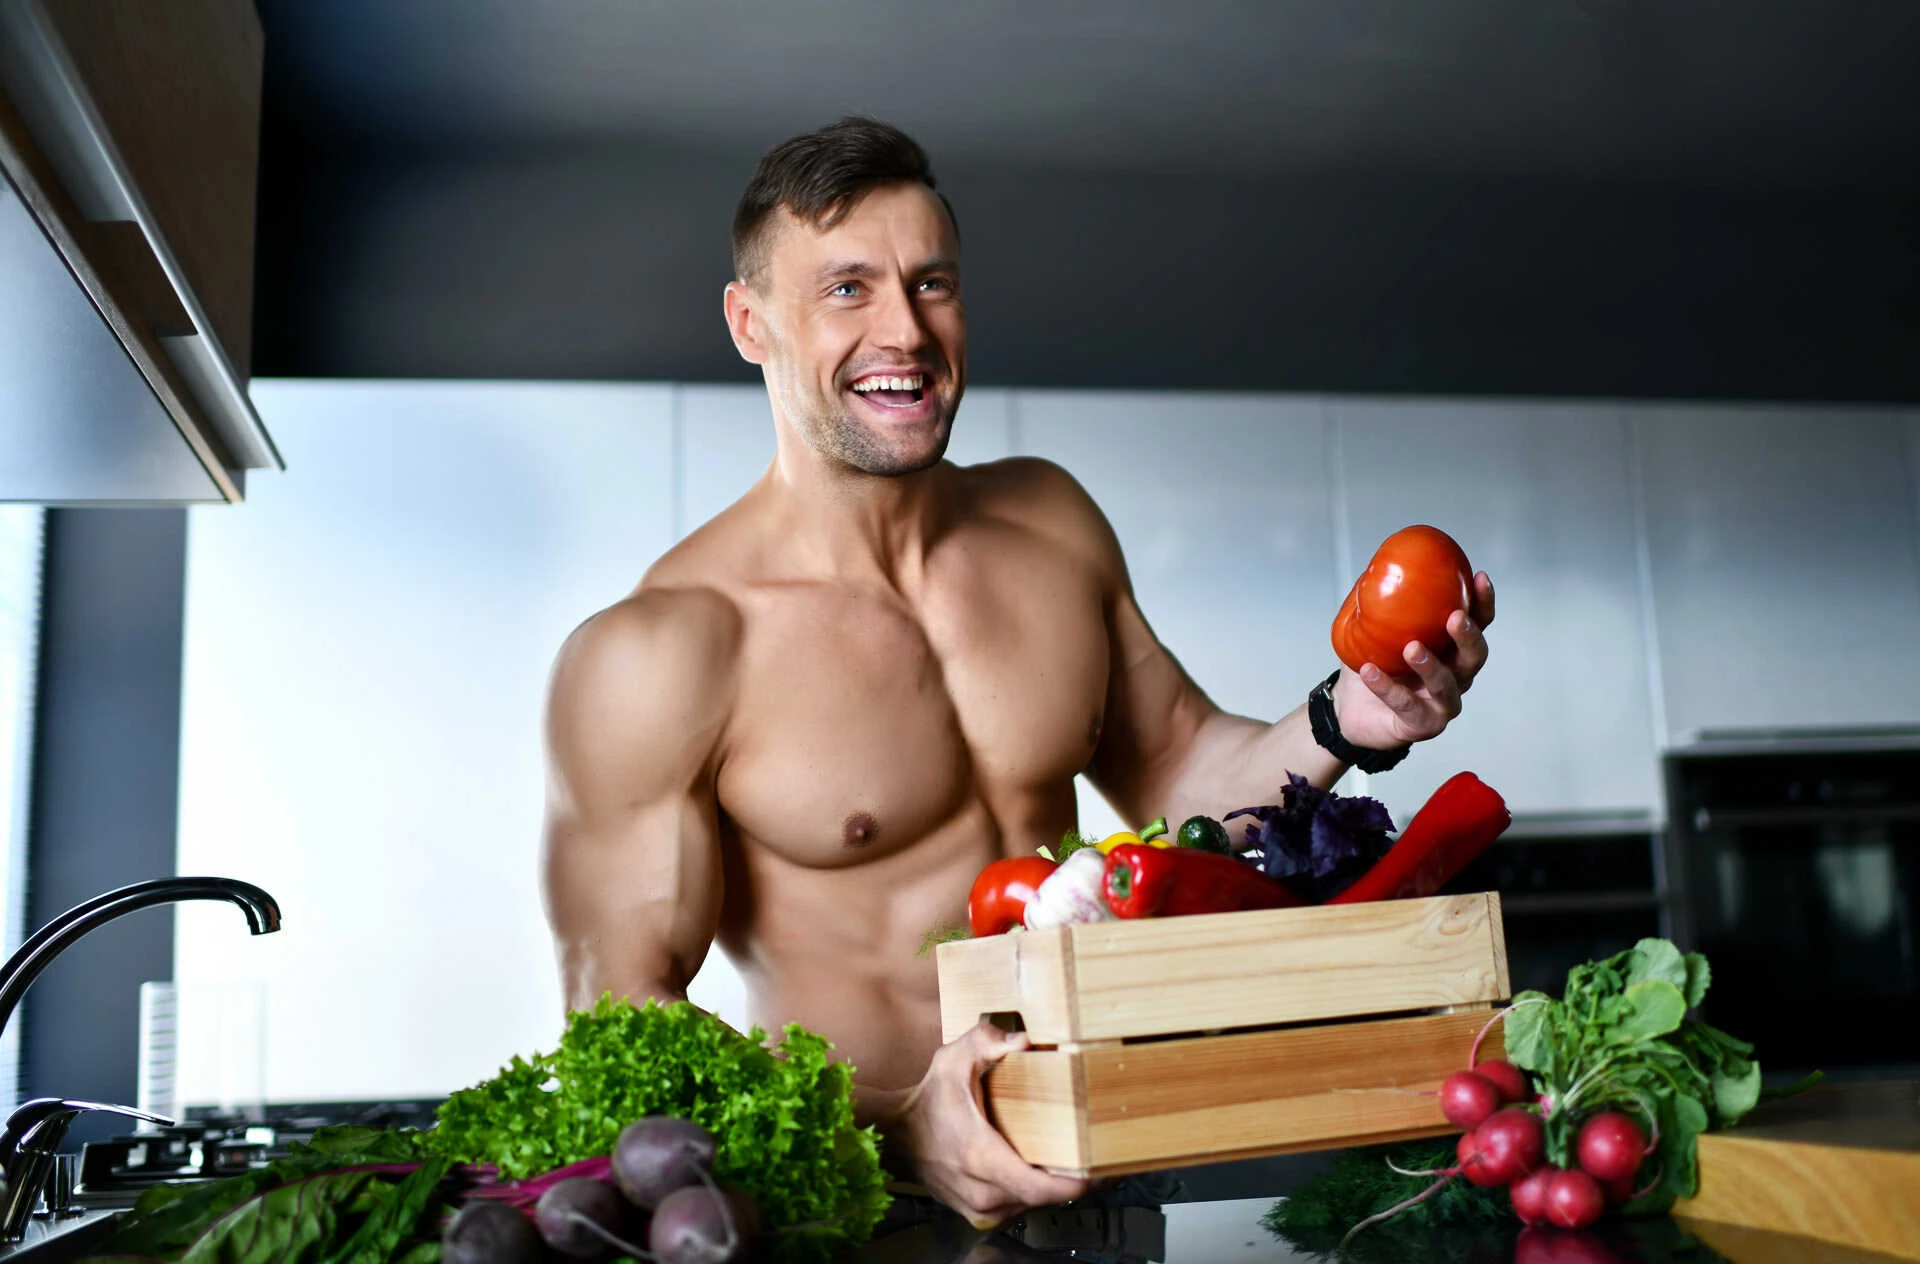 Combining vegetarianism with bodybuilding